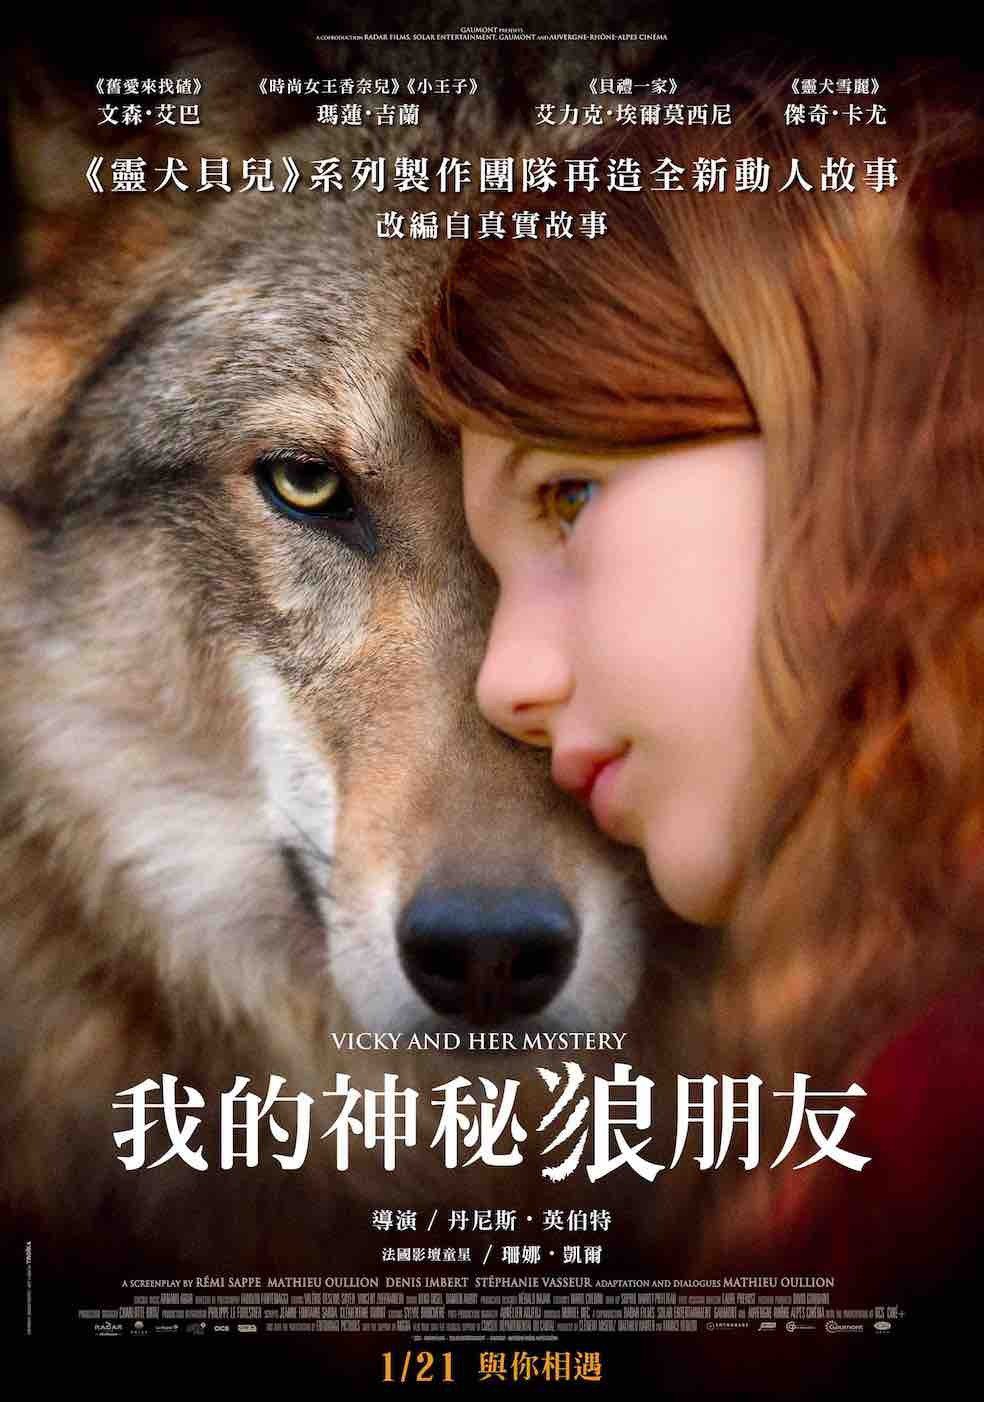 《我的神秘狼朋友》中文海報。捷傑提供